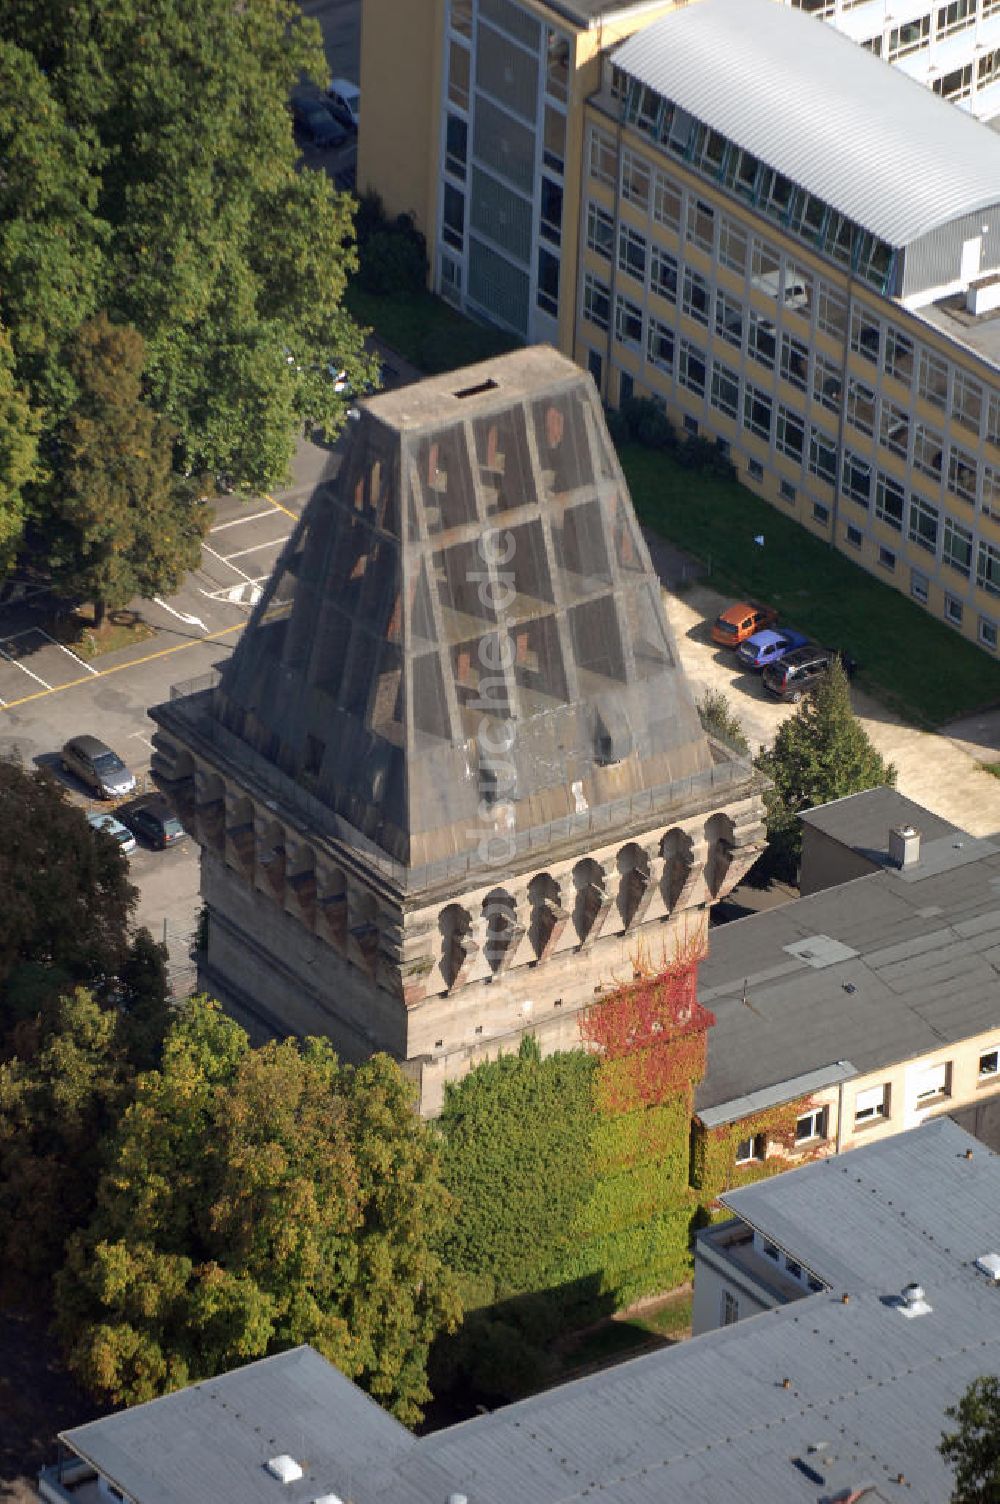 Luftaufnahme Trier - Blick auf den Augustinerhof mit dem unvollendeten Hochbunker in Trier